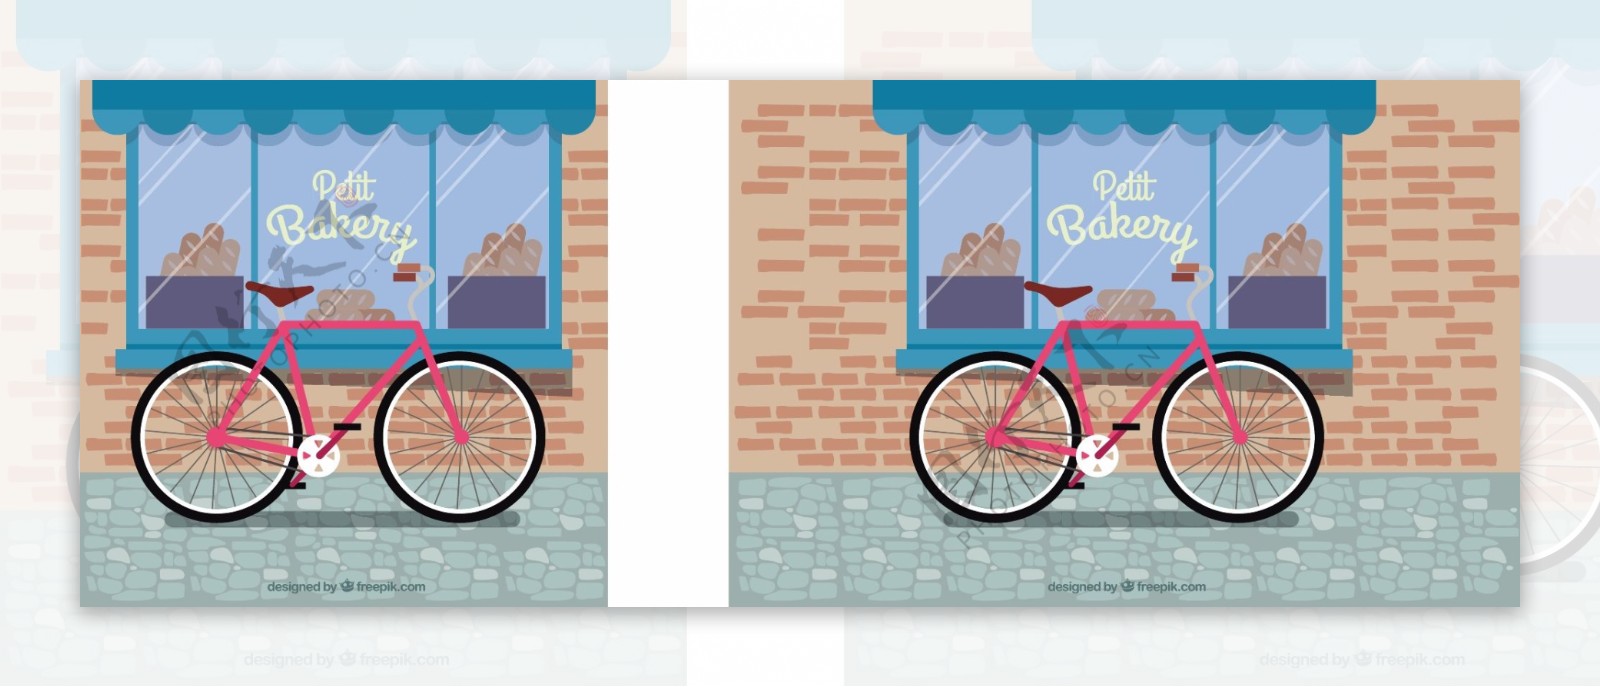 可爱的自行车和面包店